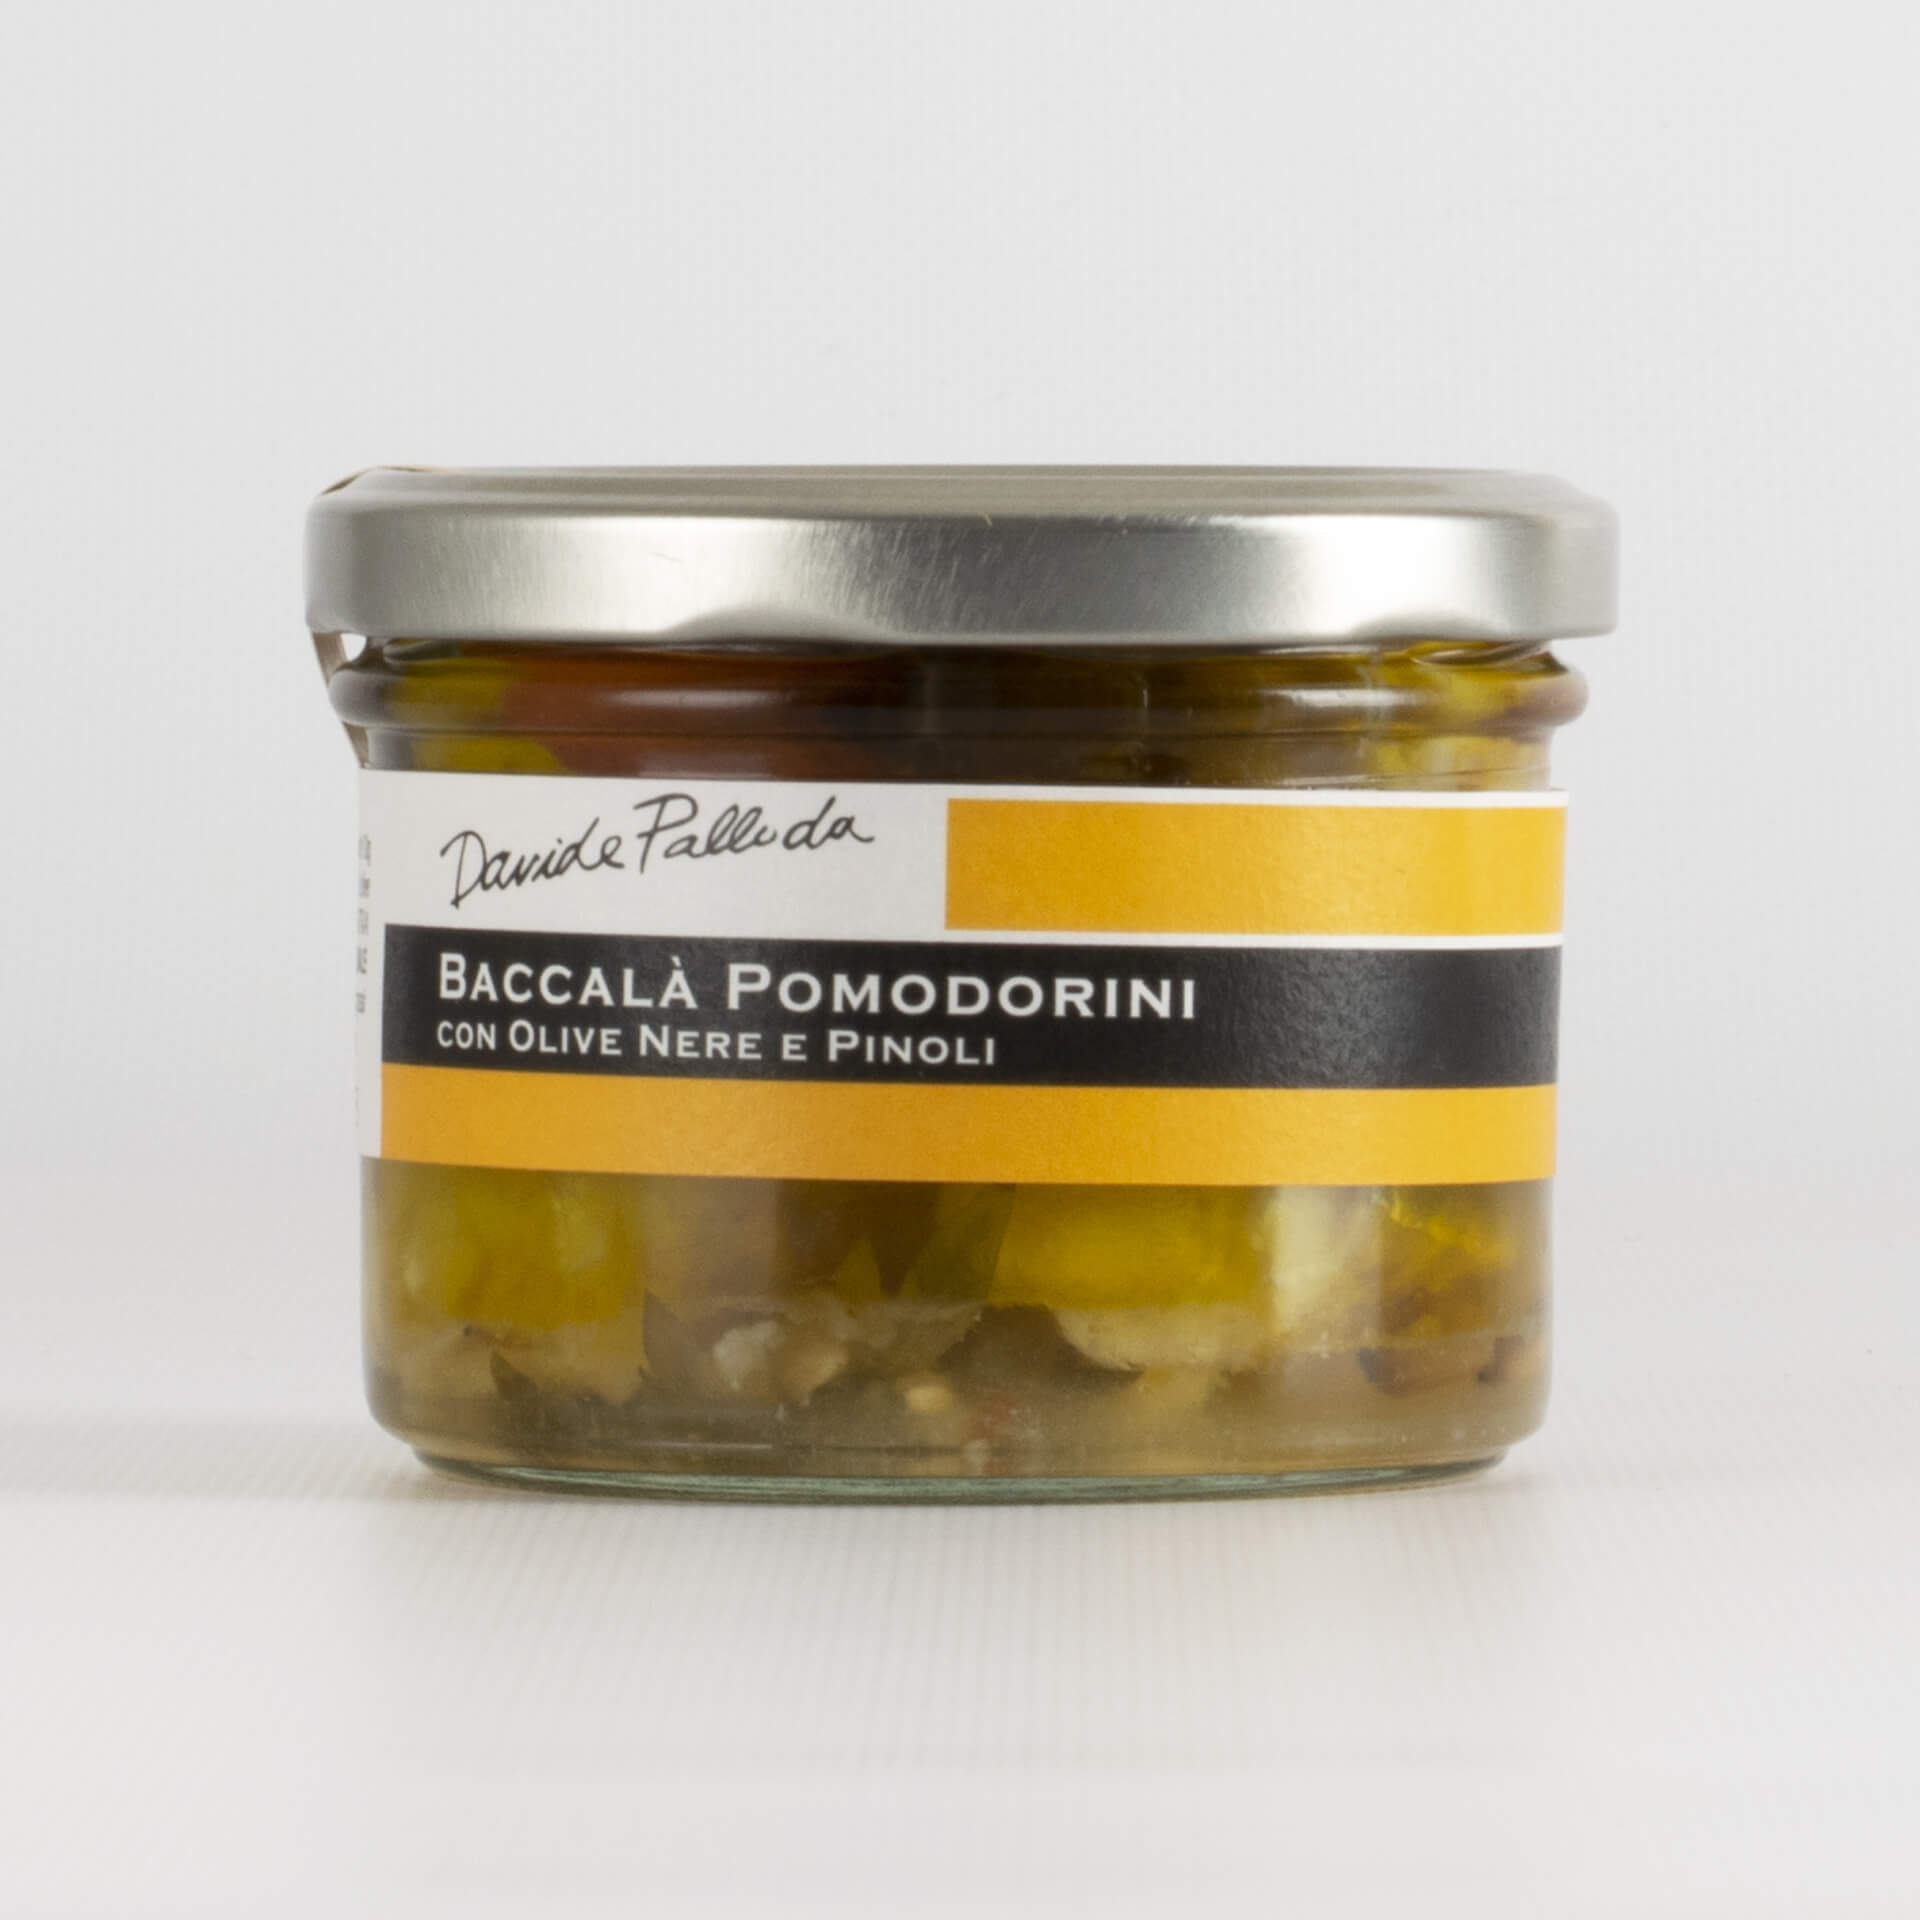 Baccalà pomodorini con olive nere e pinoli 210g